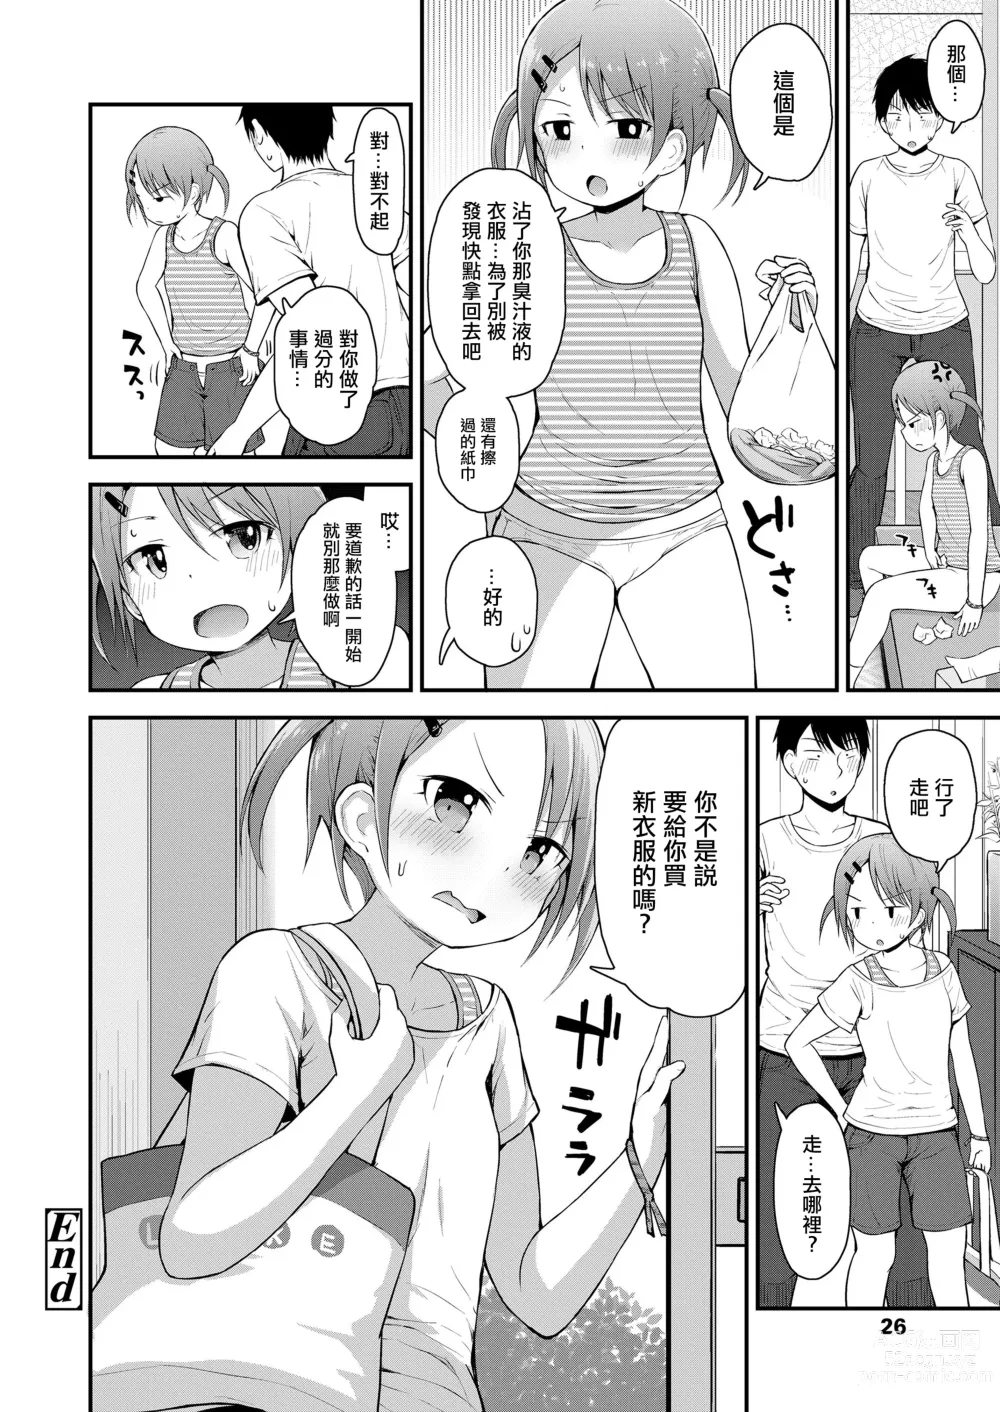 Page 20 of manga Hankouki demo Kawaii